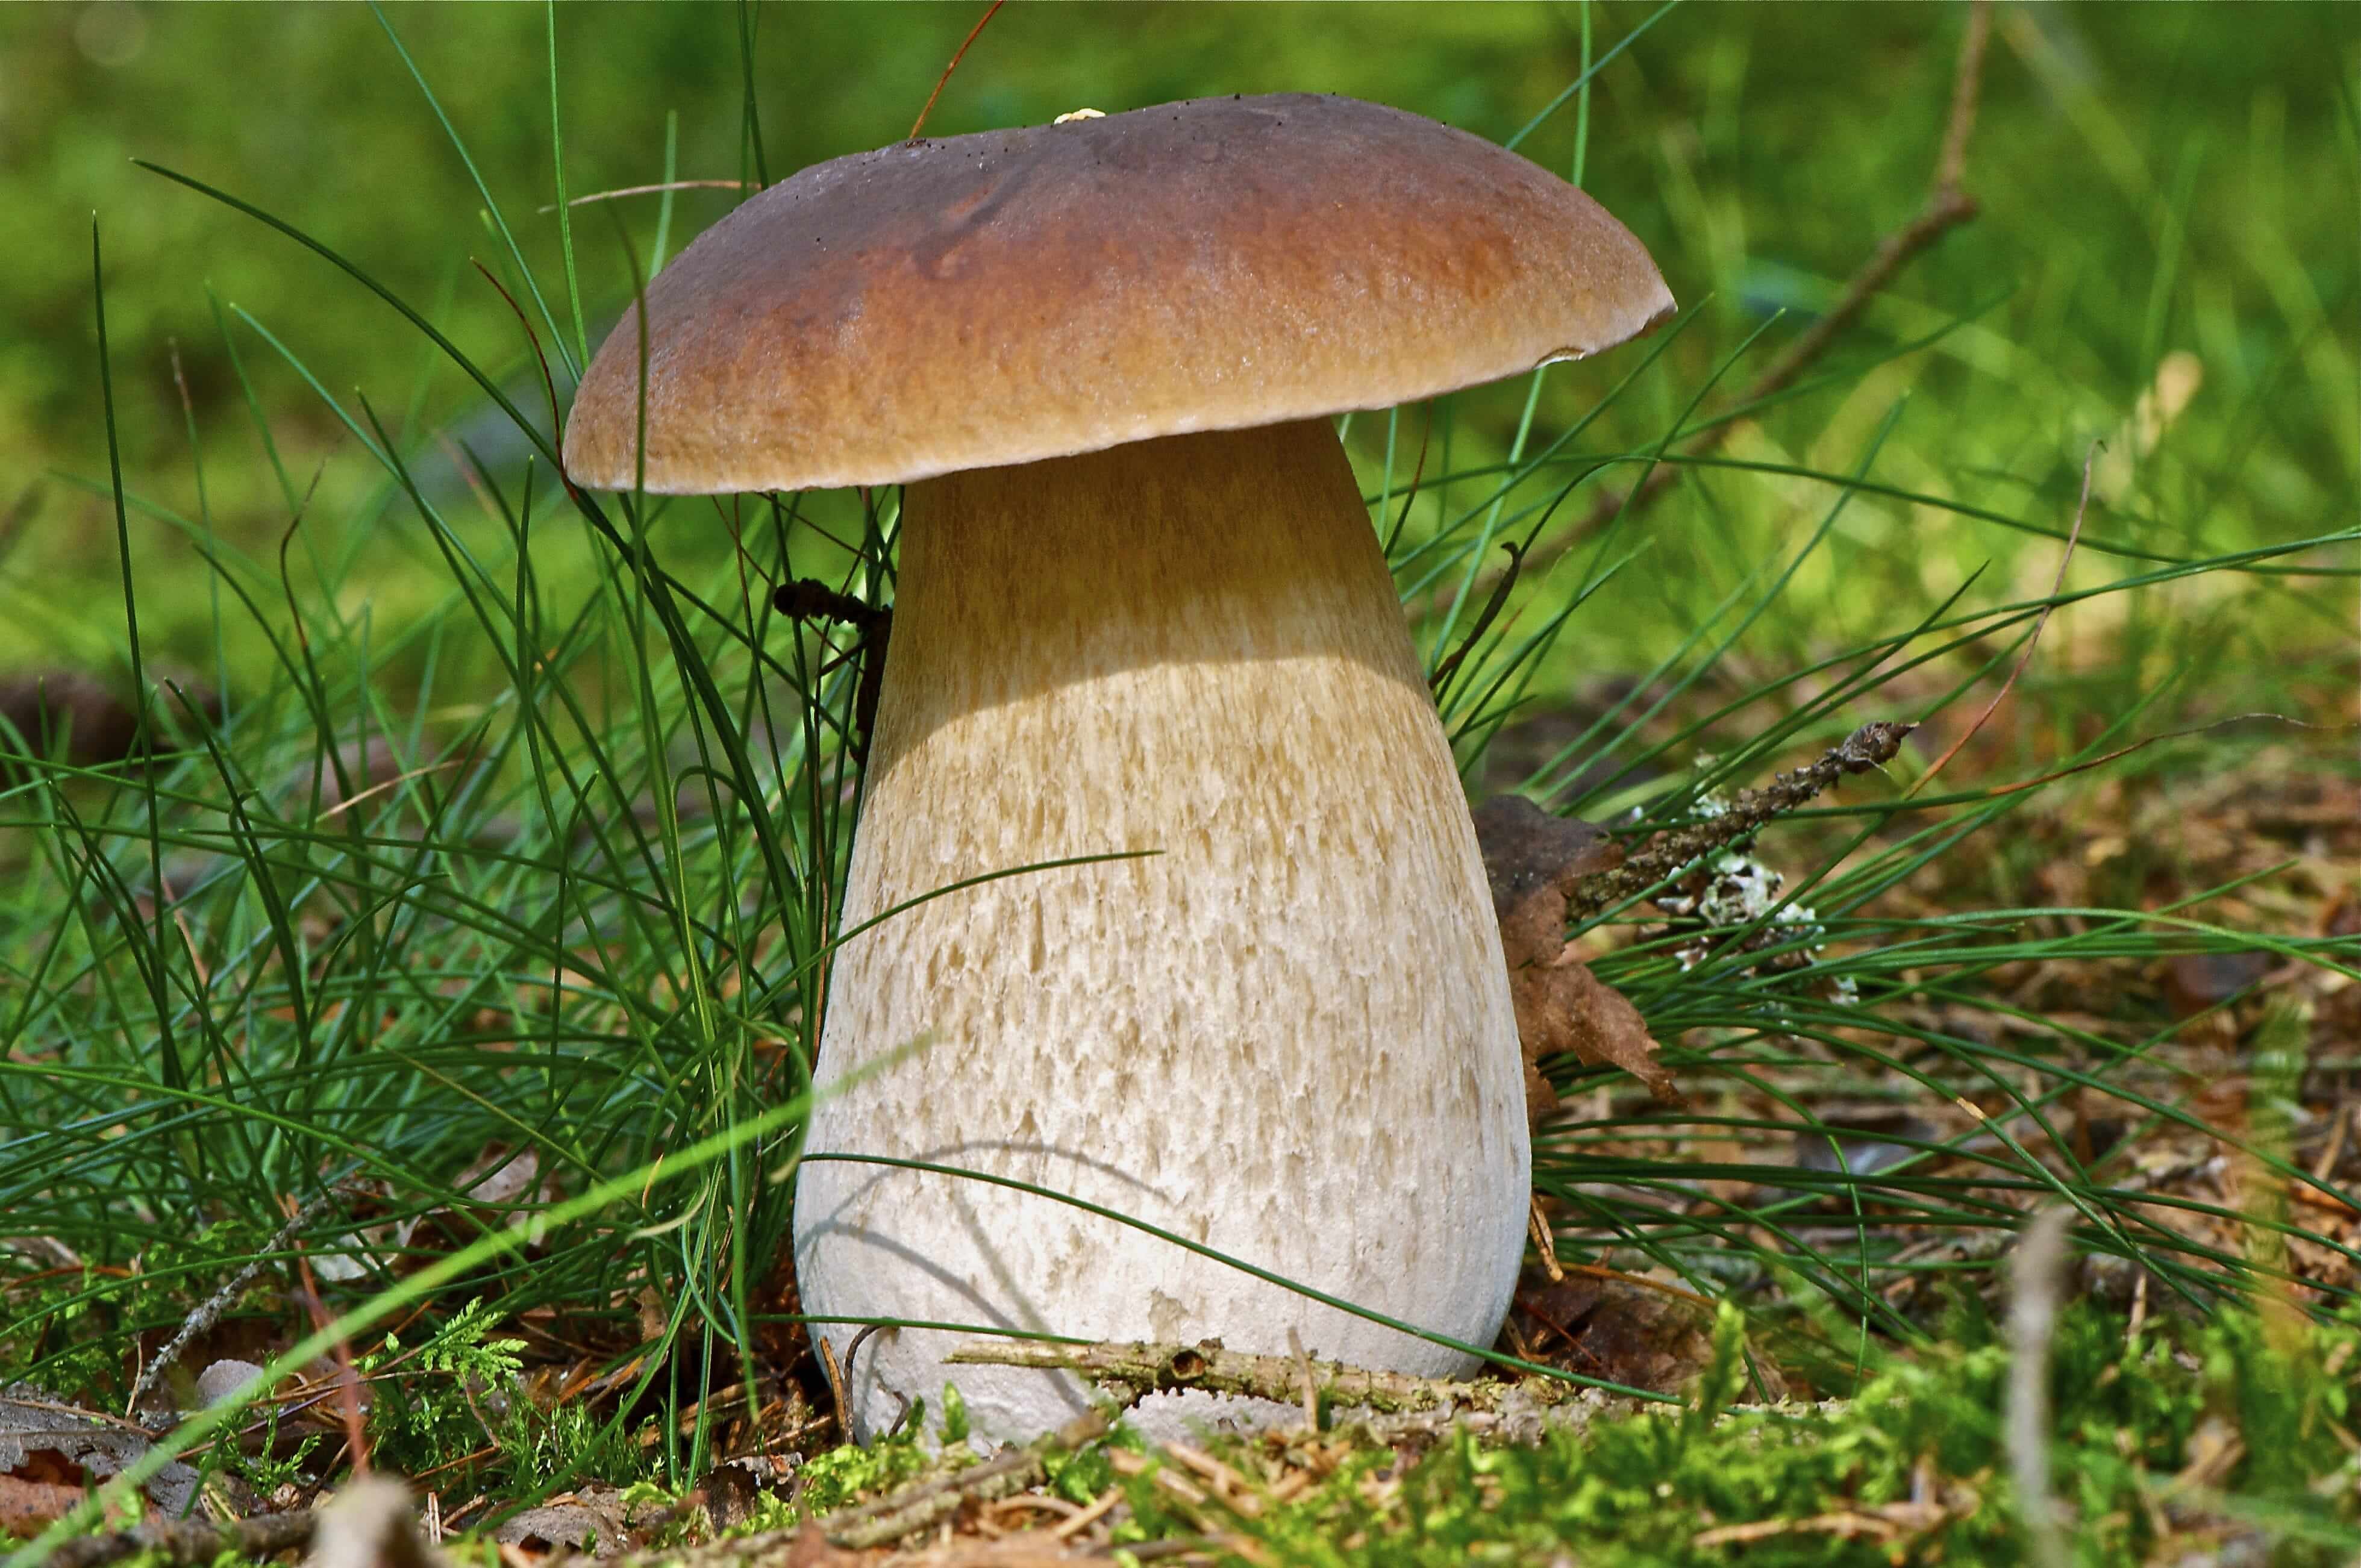 гриб боровик фото и белый гриб отличие